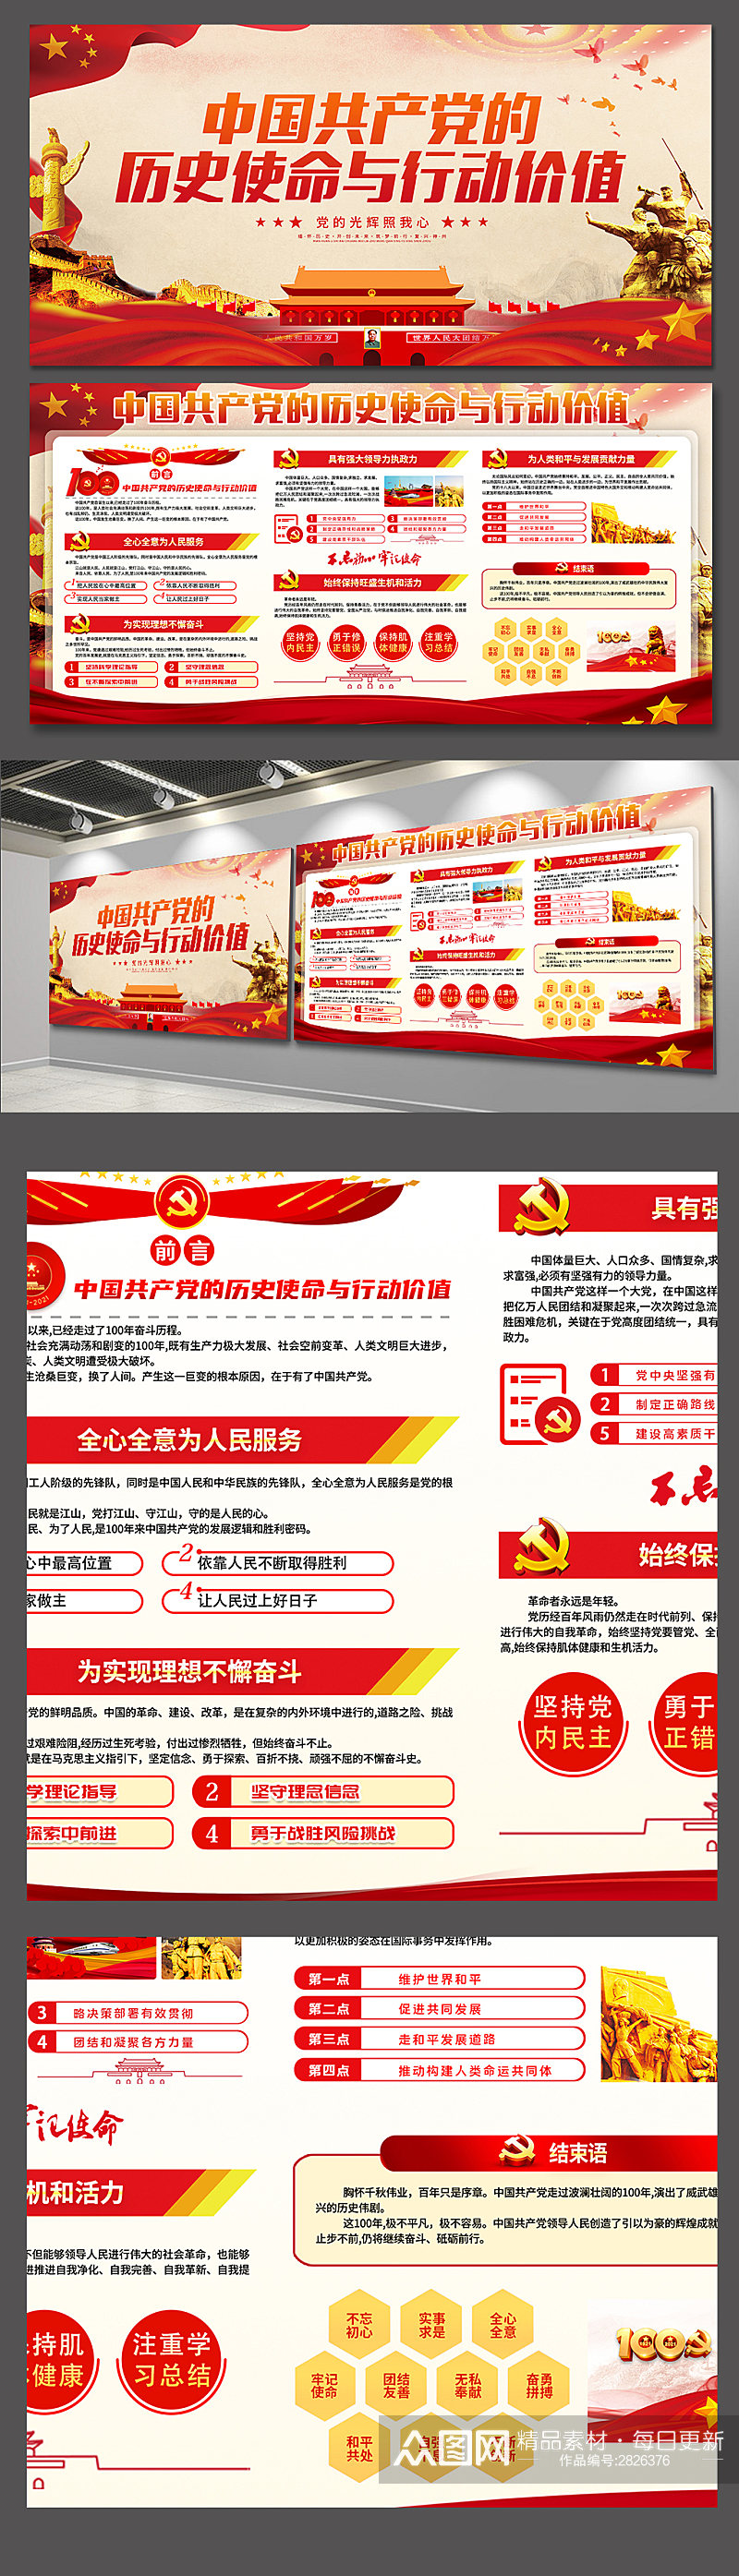 中国共产党的历史使命与行动价值展板海报素材